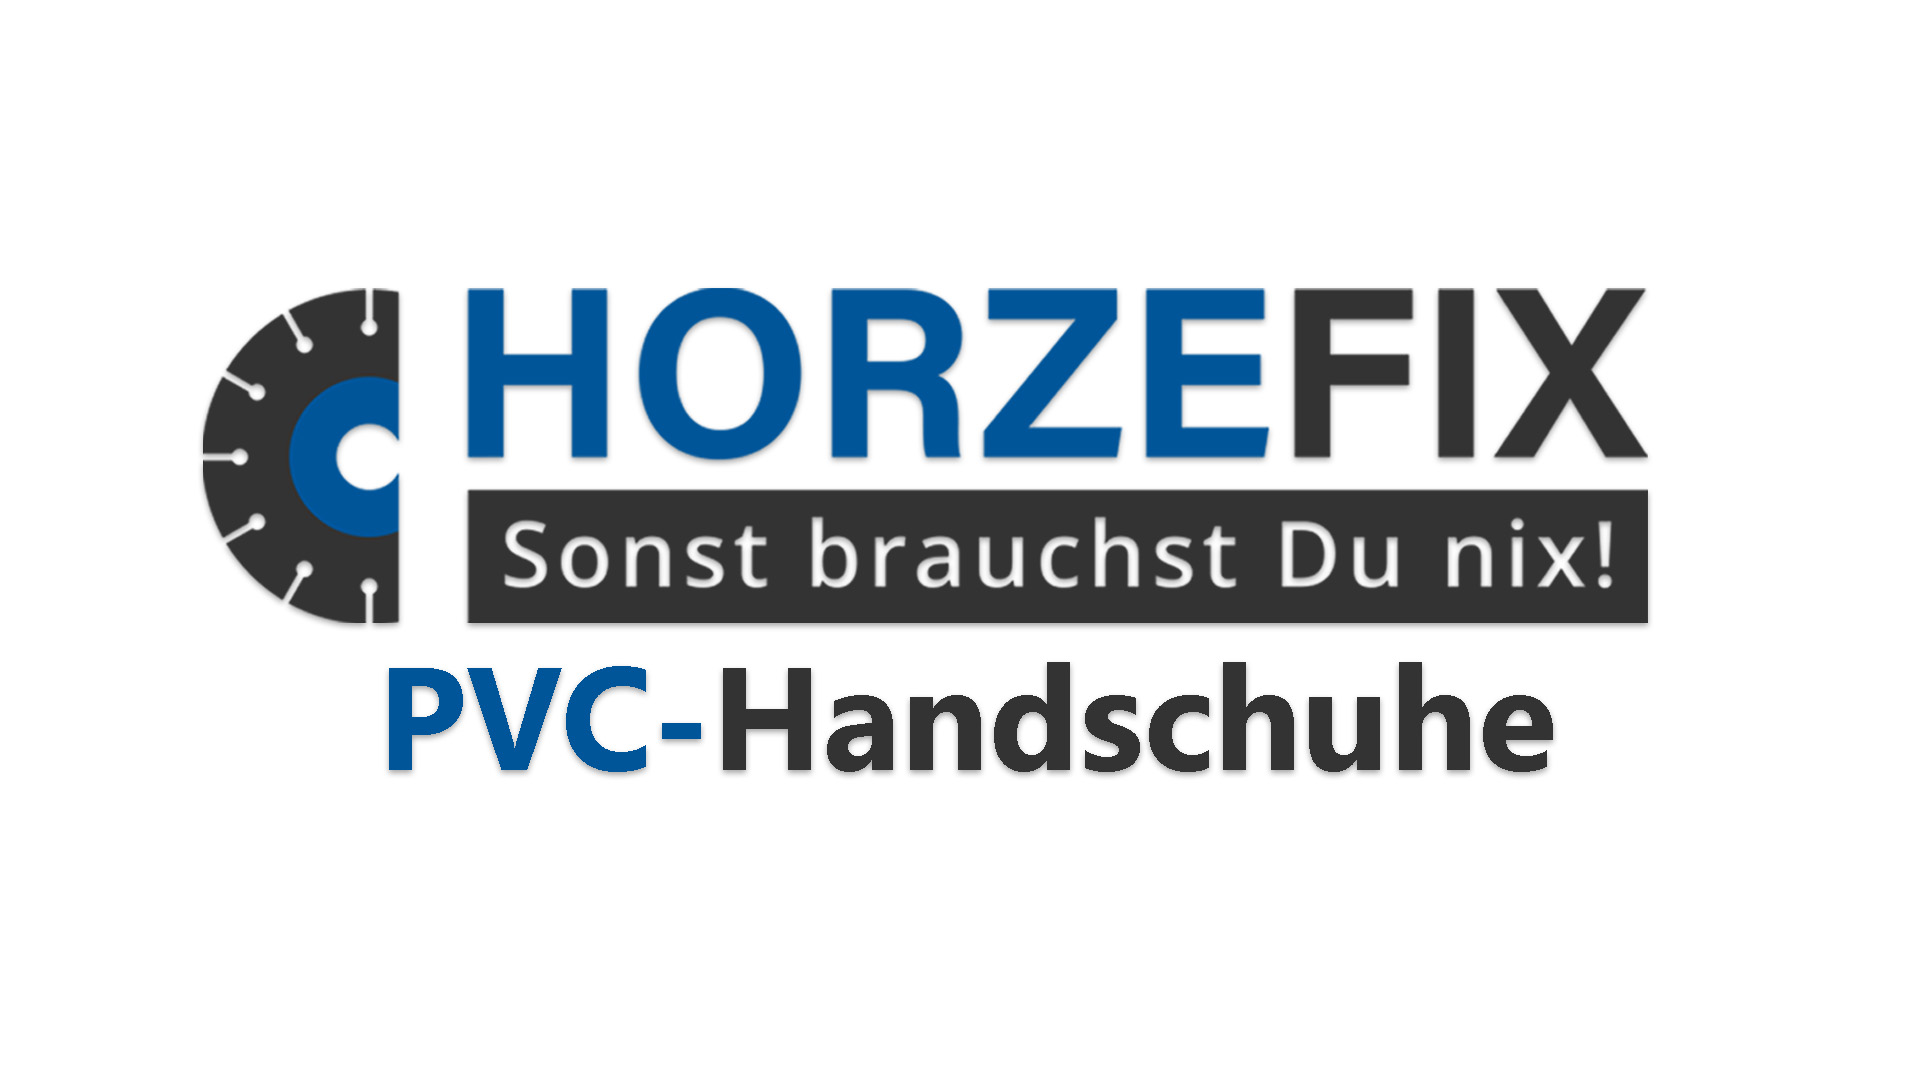 PVC-Handschuhe horzefix